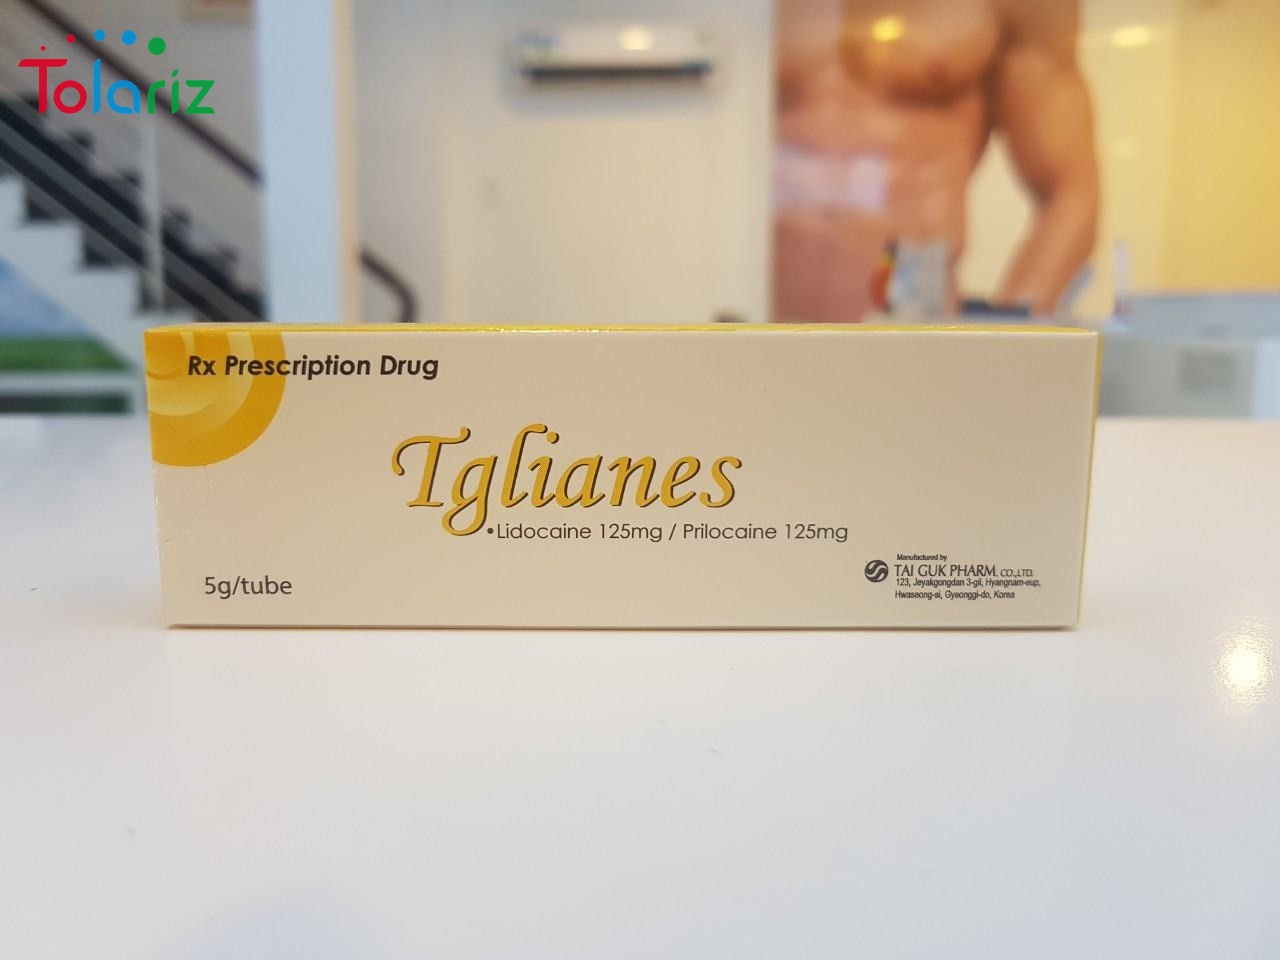 Thuốc Bôi Tglianes: Công Dụng, Thành Phần, Cách Dùng Hiệu Quả